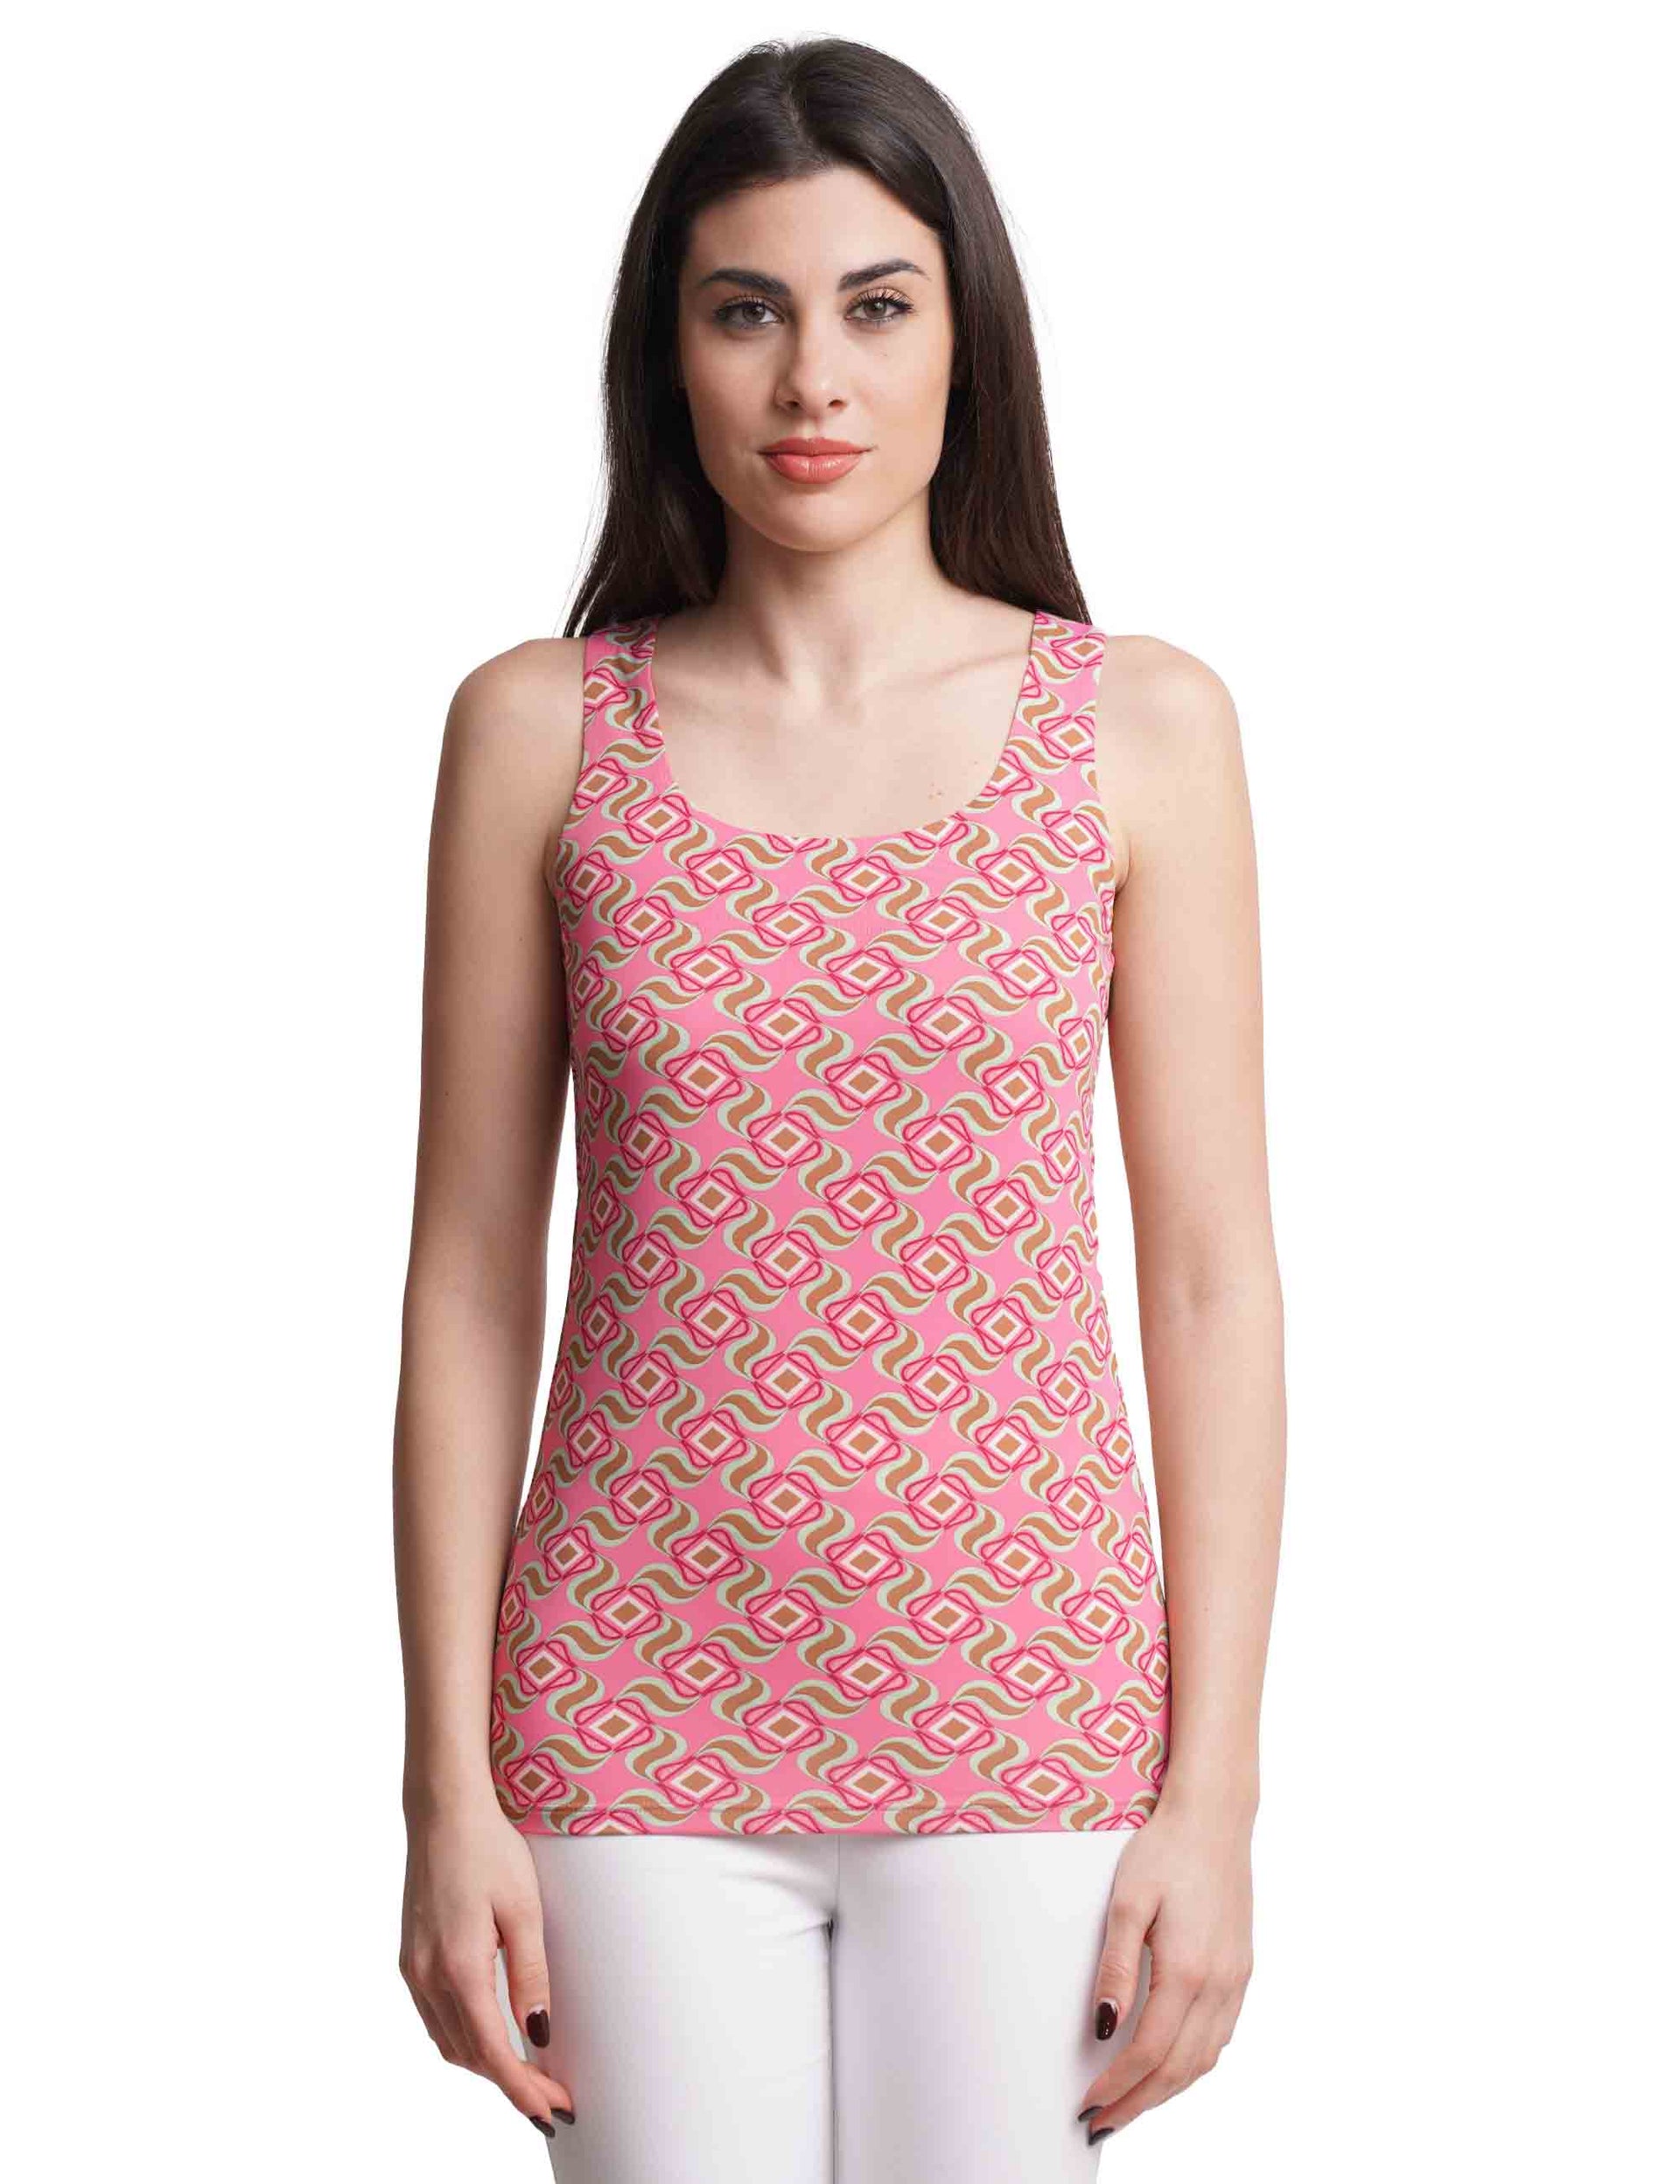 Swirl Print women's top in patterned pink jersey